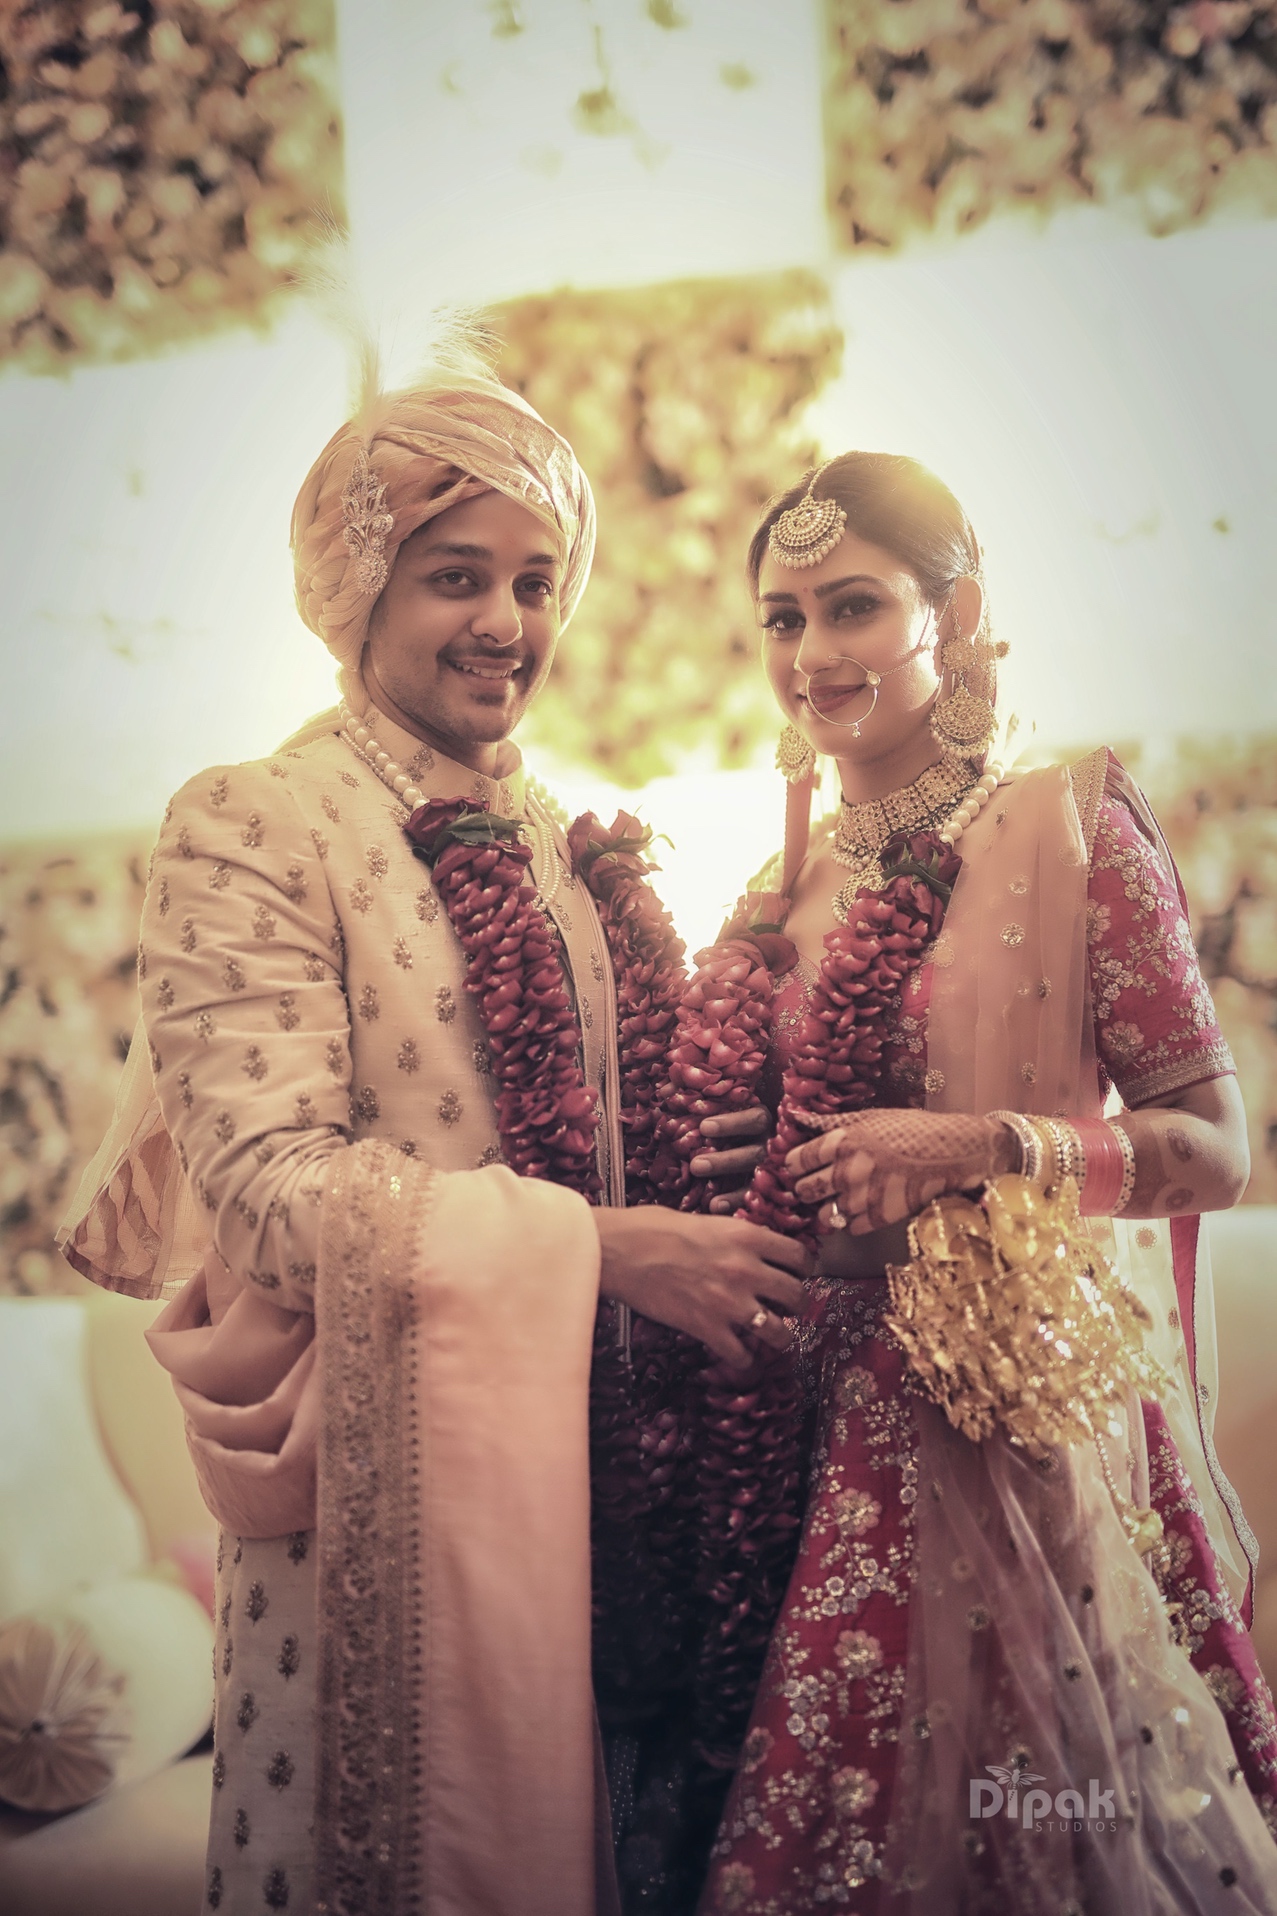 Wedding couple posts | Indian wedding couple photography, Indian bride photography  poses, Bride photography poses